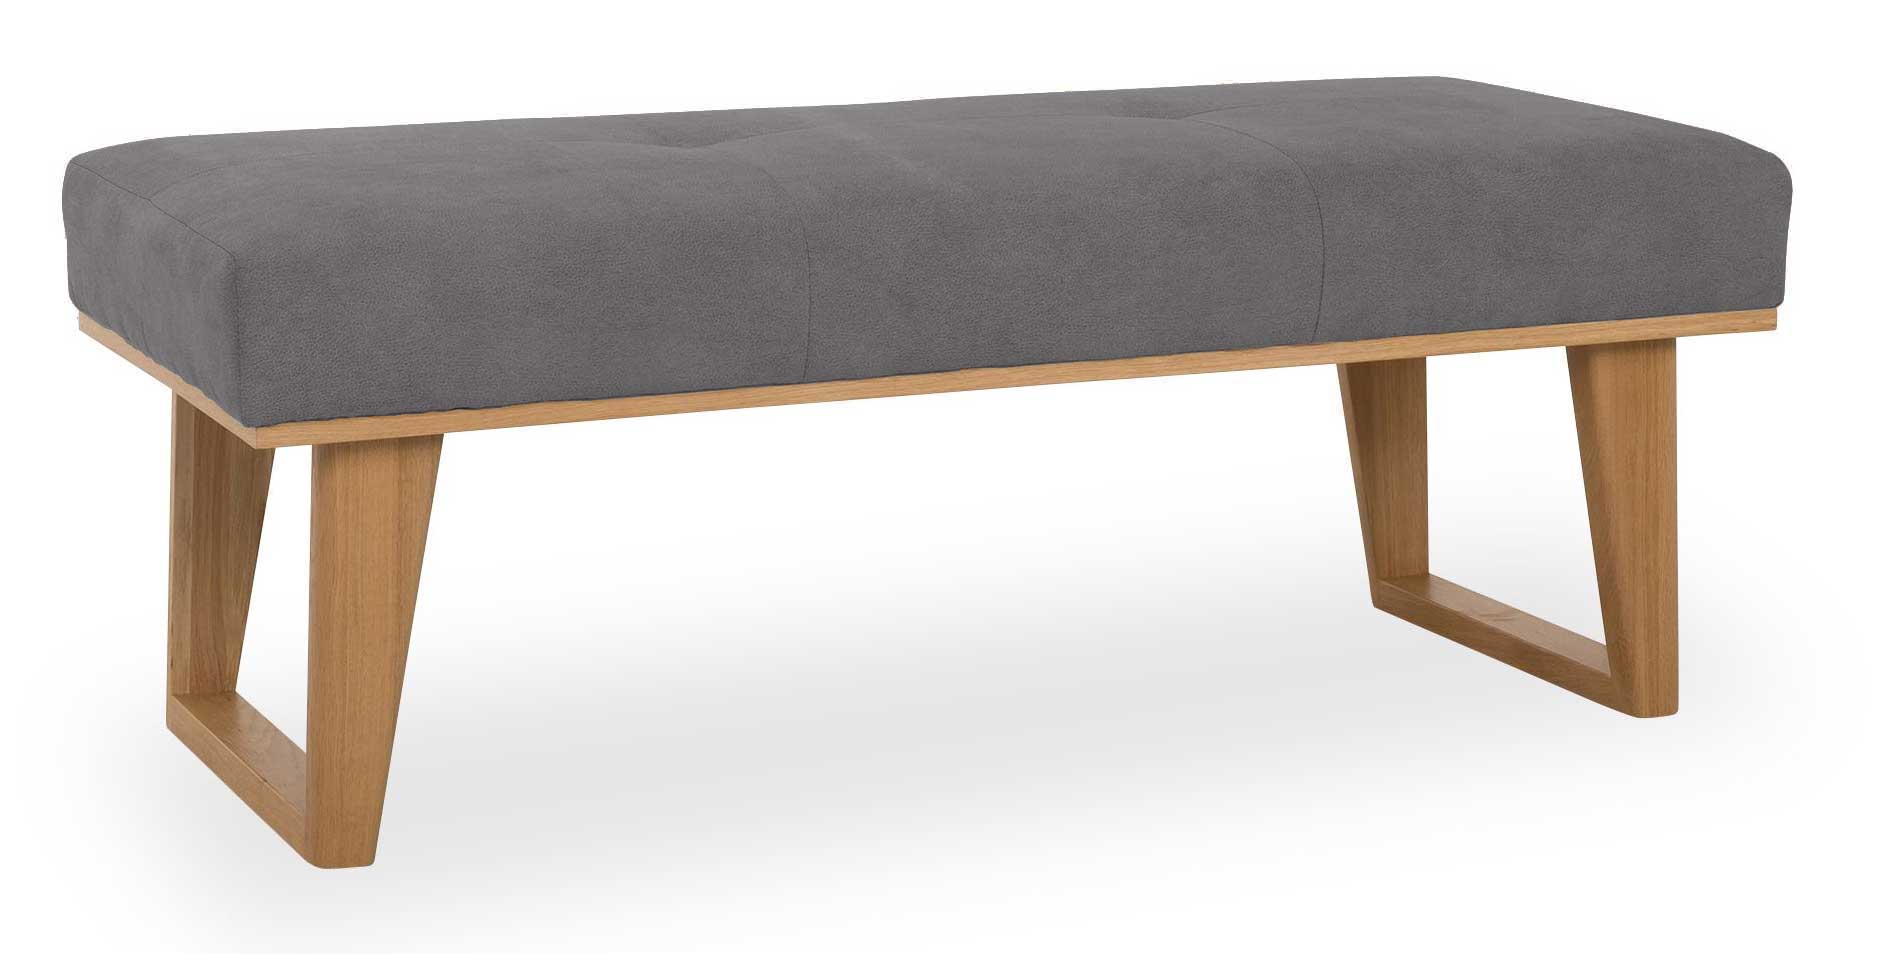 Standard Furniture Colmar Landhaus Polsterbank 150 cm mit eiche Gestell grau